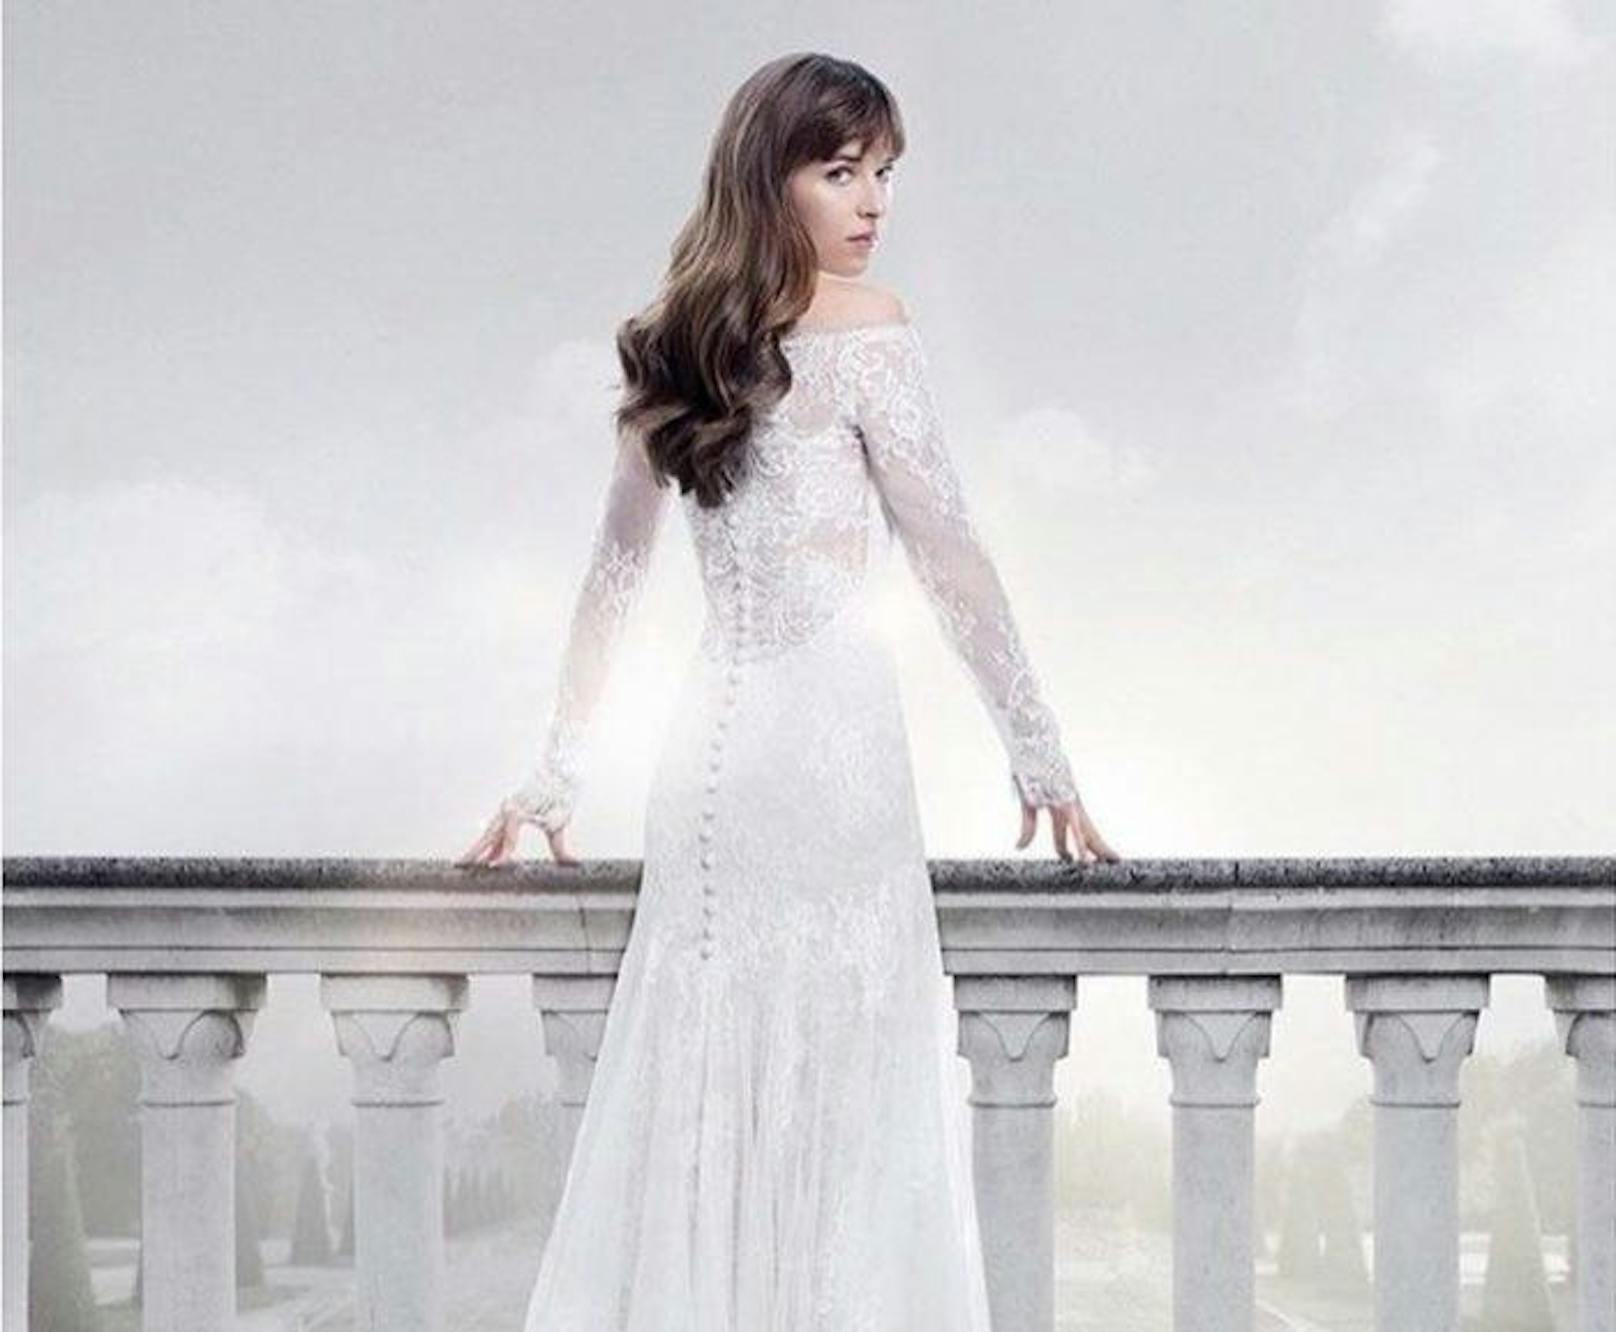 Das Hochzeitskleid von Anastasia Steel erinnert an ikonische Roben, wie von Grace Kelly und Kate Middleton. 